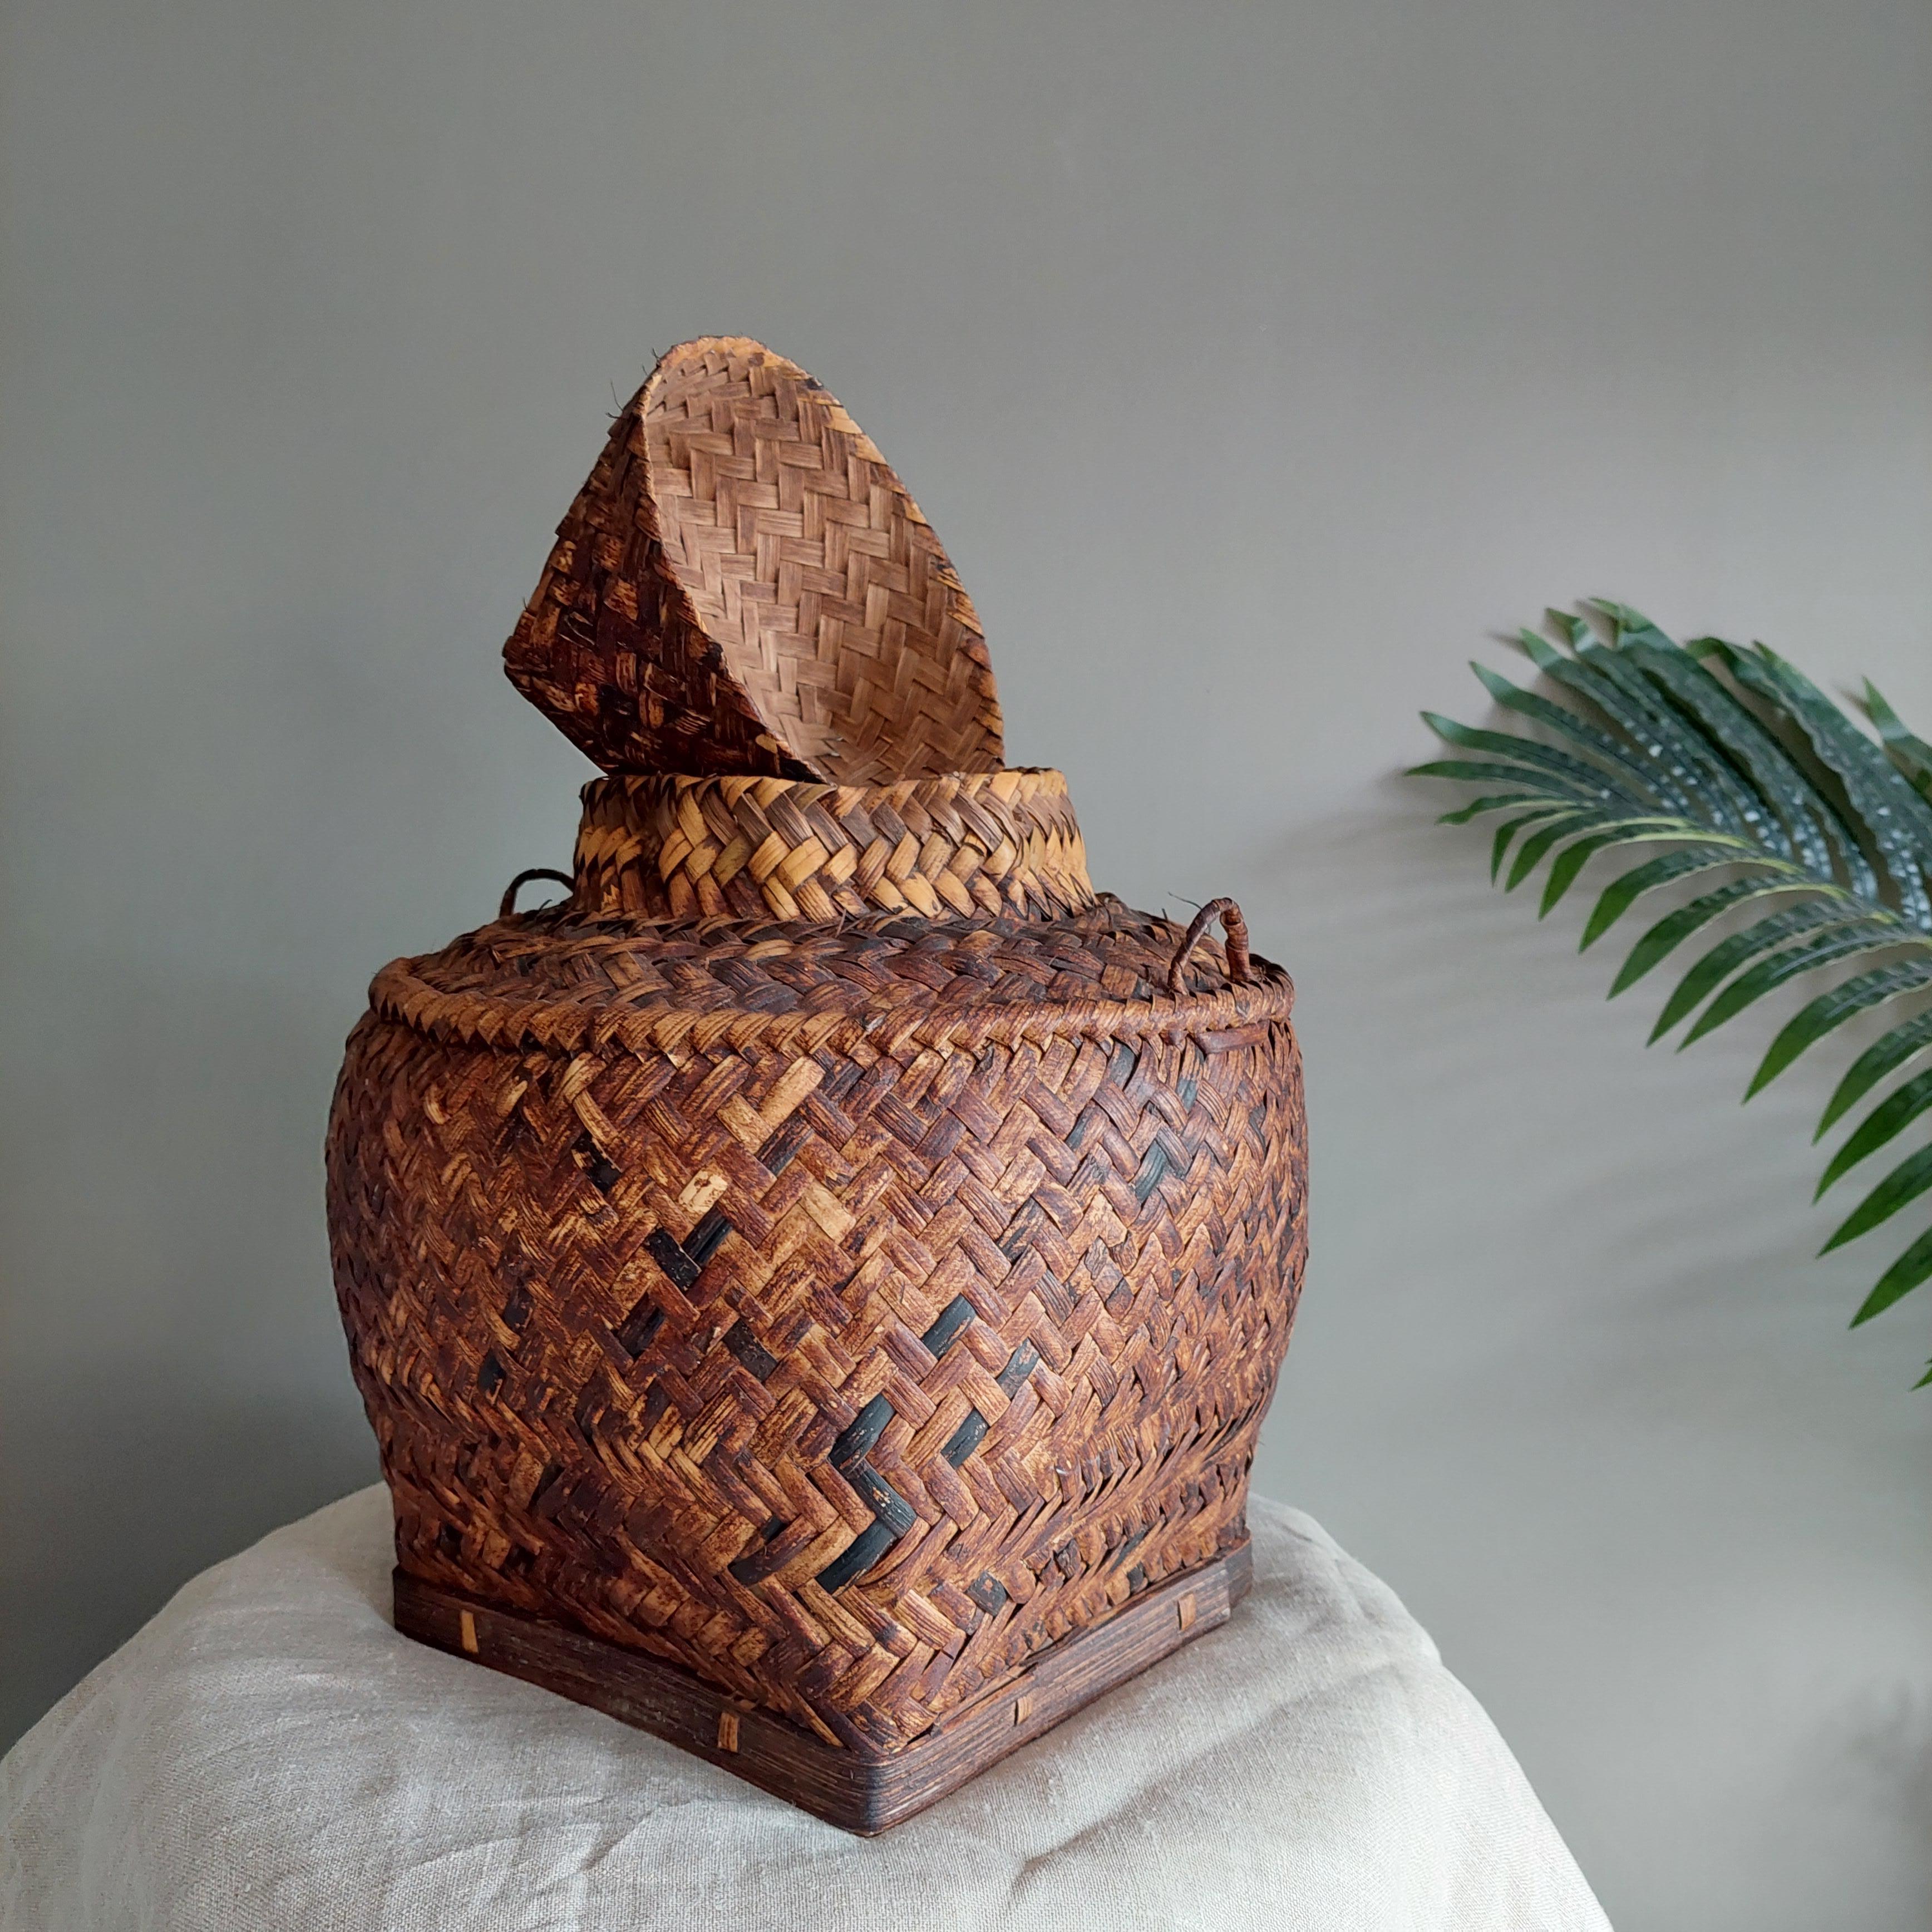 Asiatischer Vintage-Korb mit Deckel.
Schöner Rattankorb mit Fischgrätenmuster.

Dieser wunderschöne, mittelgroße handgeflochtene Reiskorb, der wahrscheinlich vom Stamm der Tagbanwa in Palawan auf den Philippinen stammt, hat eine attraktive Form und